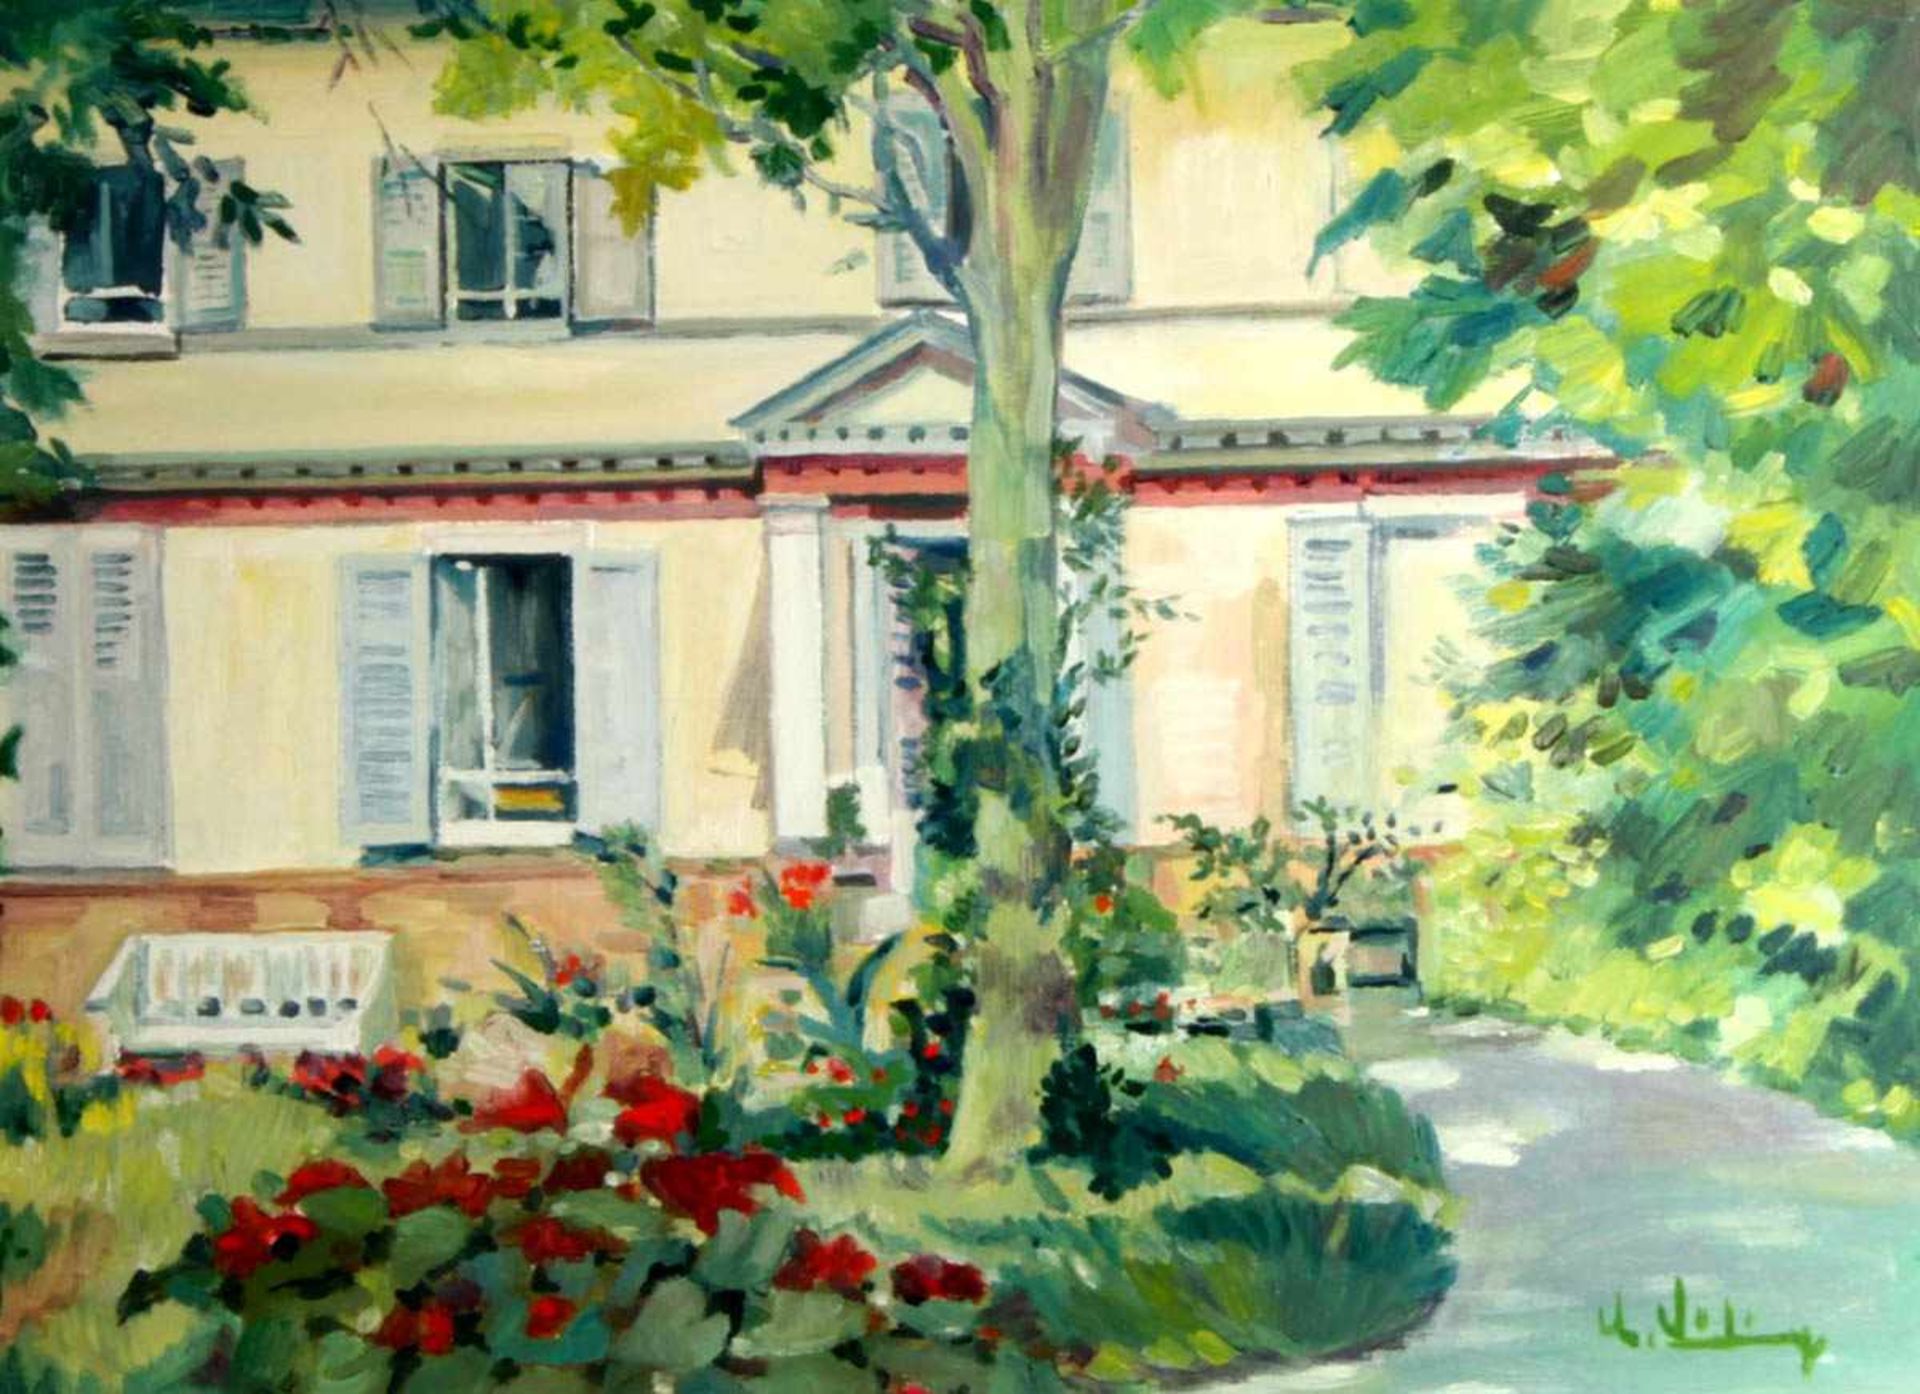 Lühning, U.Öl auf Hartfaser. Sommerhaus mit blühendem Garten. Re. unten sig. 56 x 75 cm. Rahmen